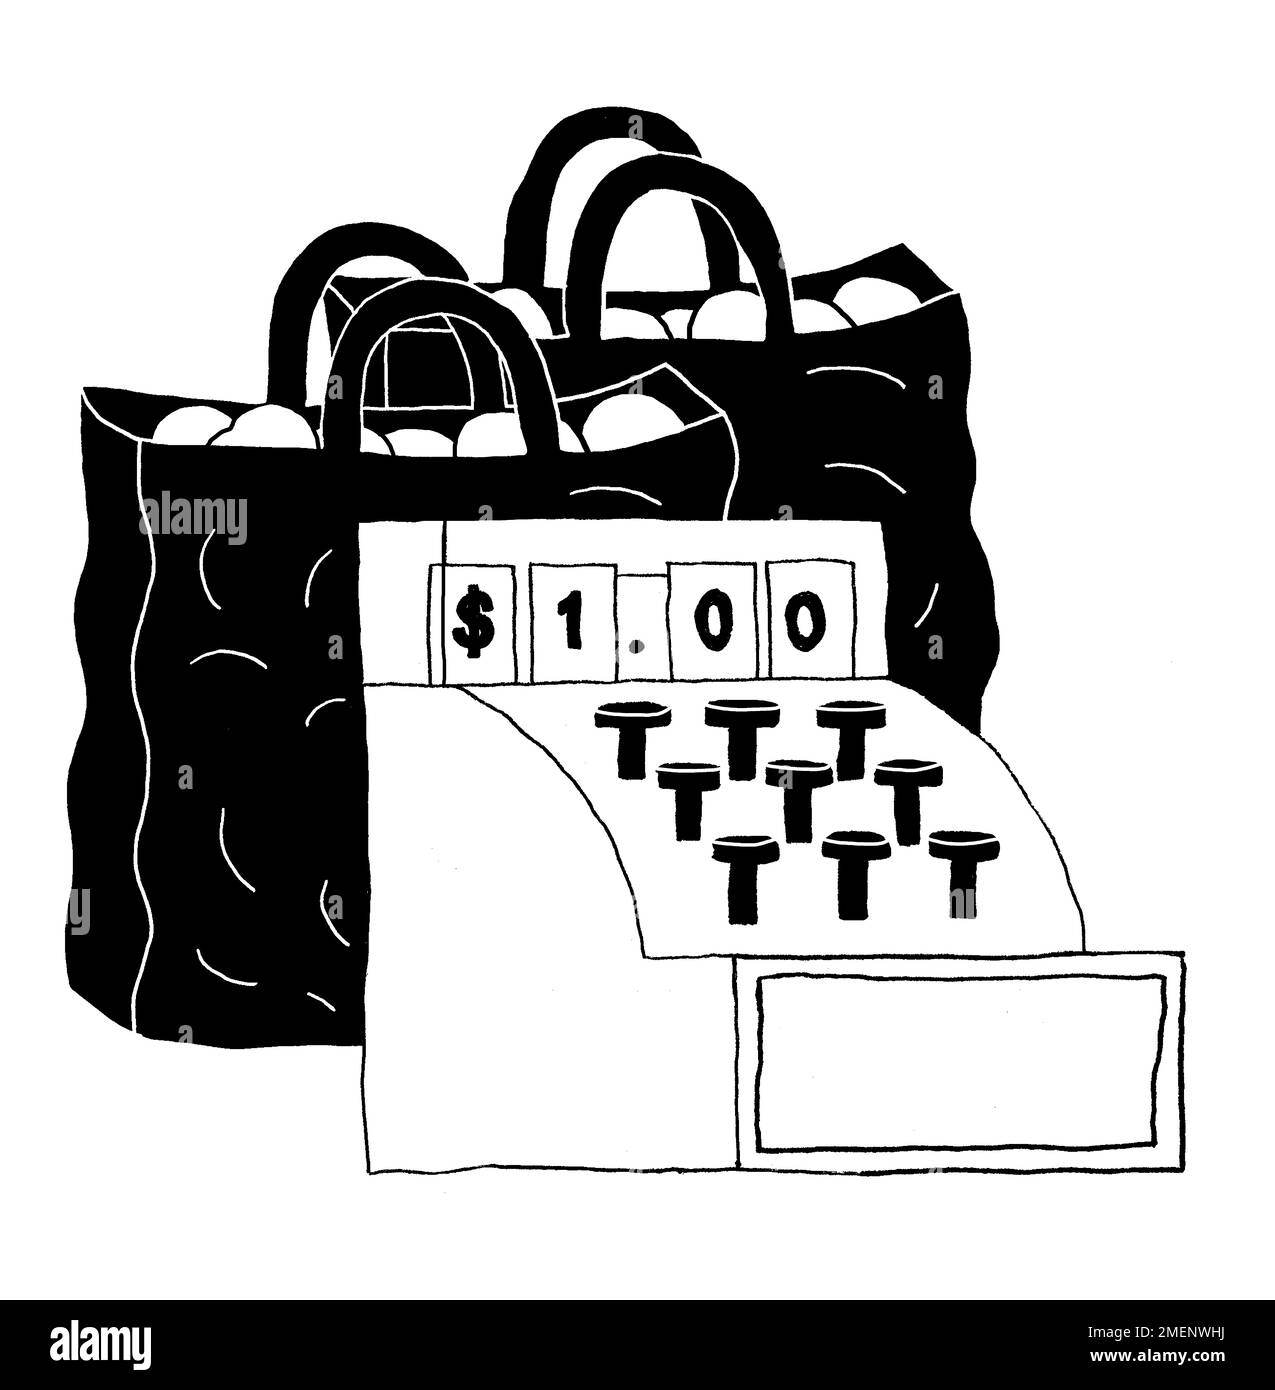 Illustrazione in bianco e nero della cassa che mostra un segno del dollaro con i sacchetti di shopping Foto Stock